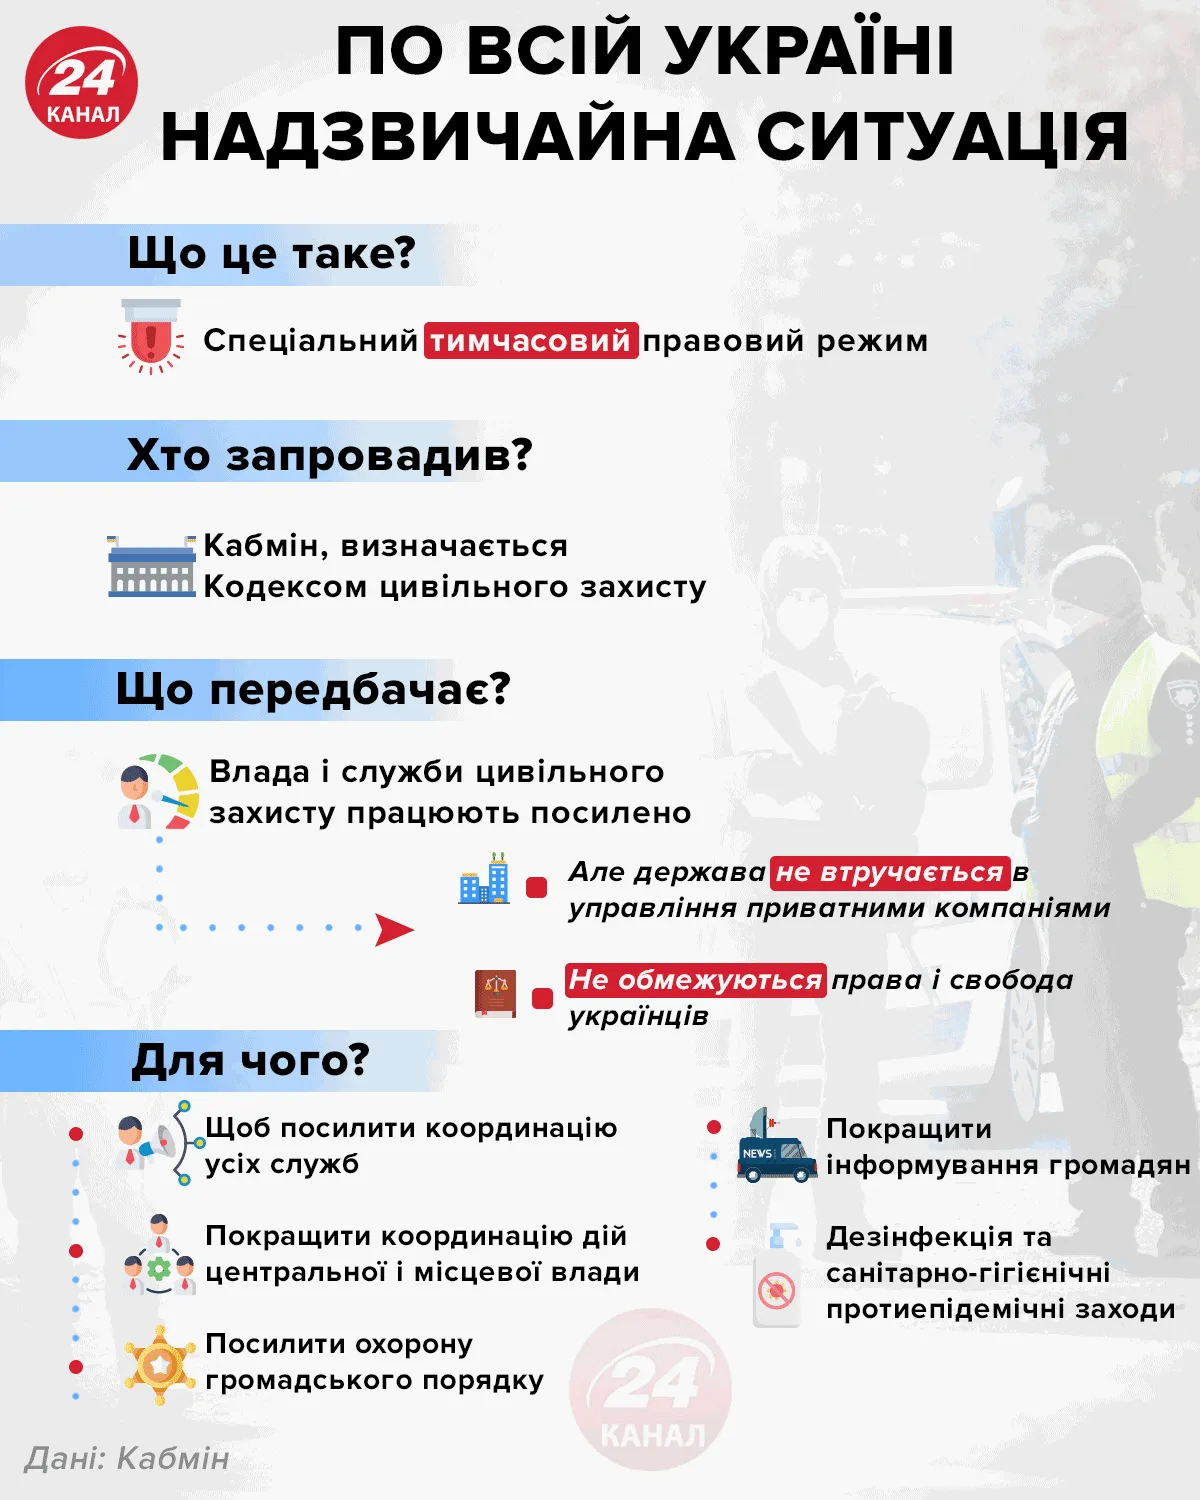 По всей Украине чрезвычайная ситуация Инфографика 24 канала